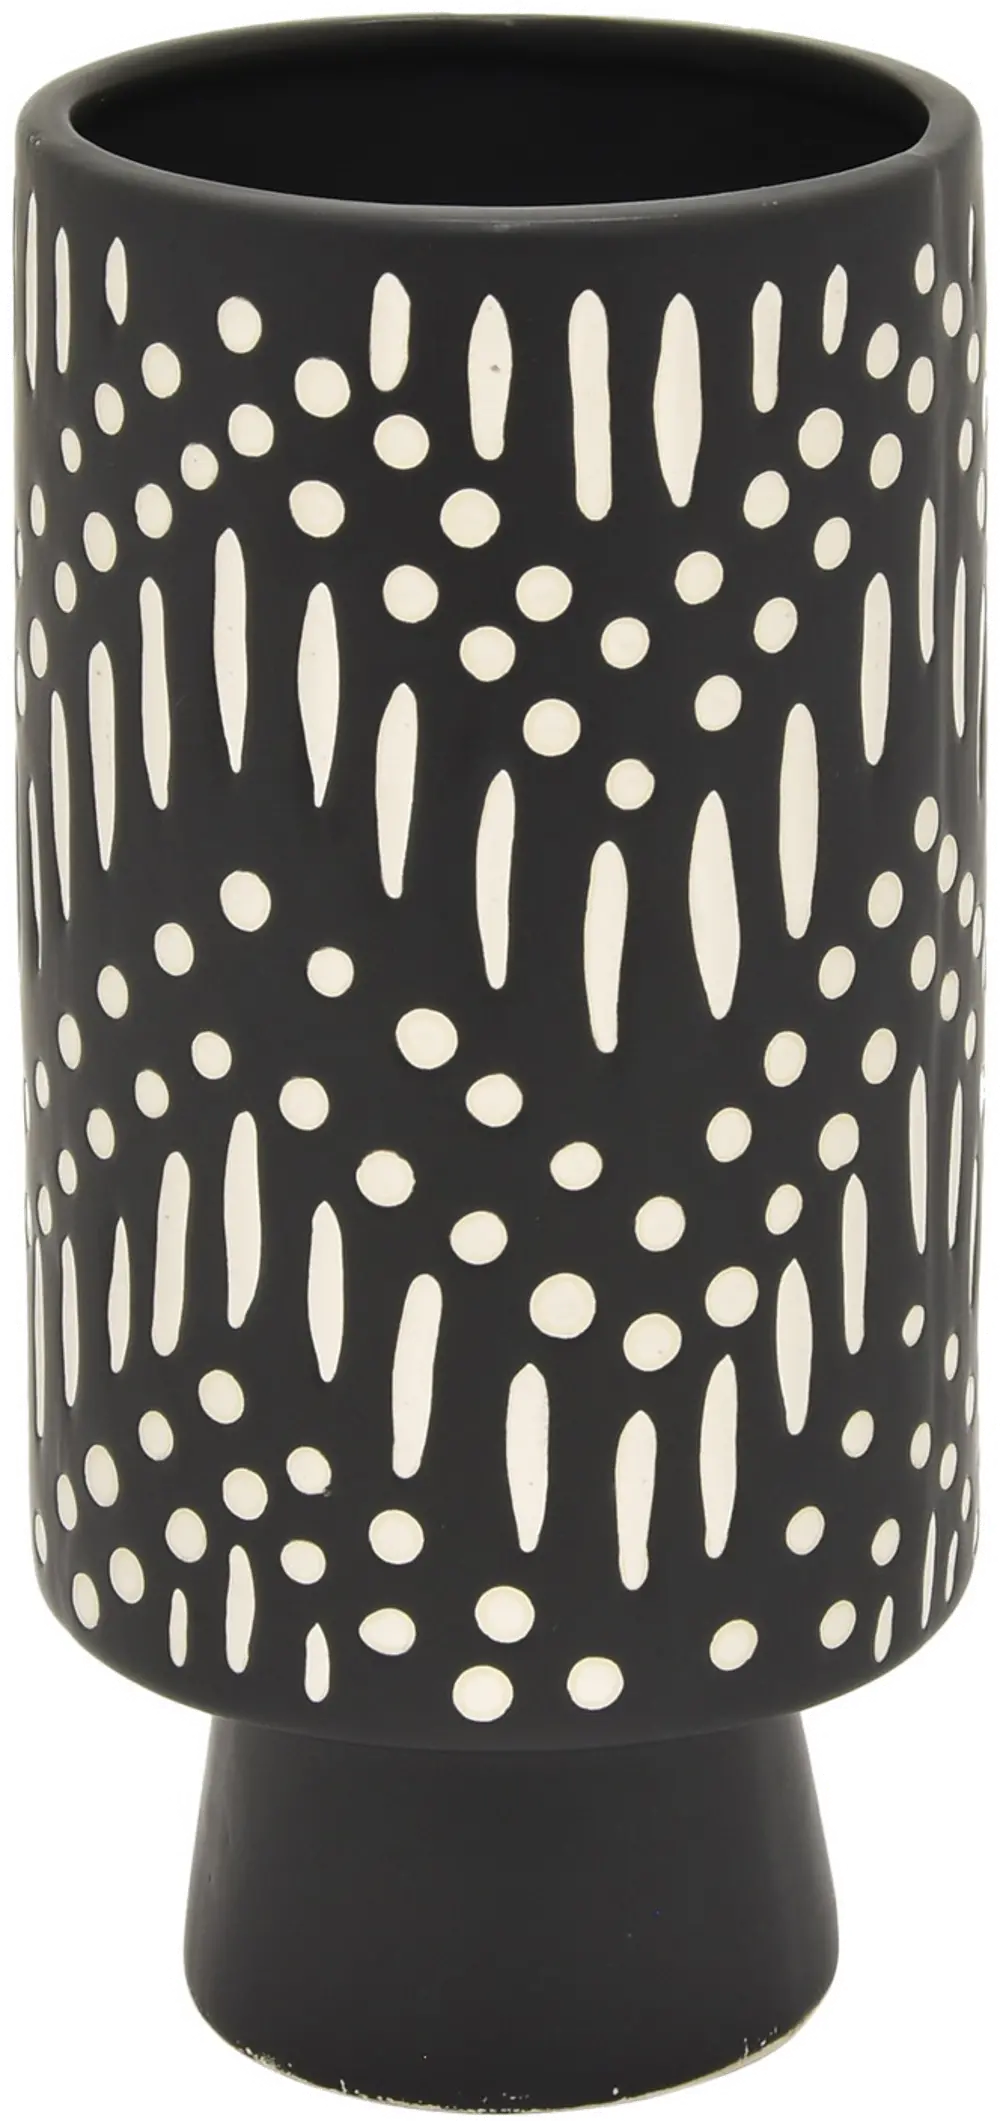 9 Inch Black and White Ceramic Vase-1